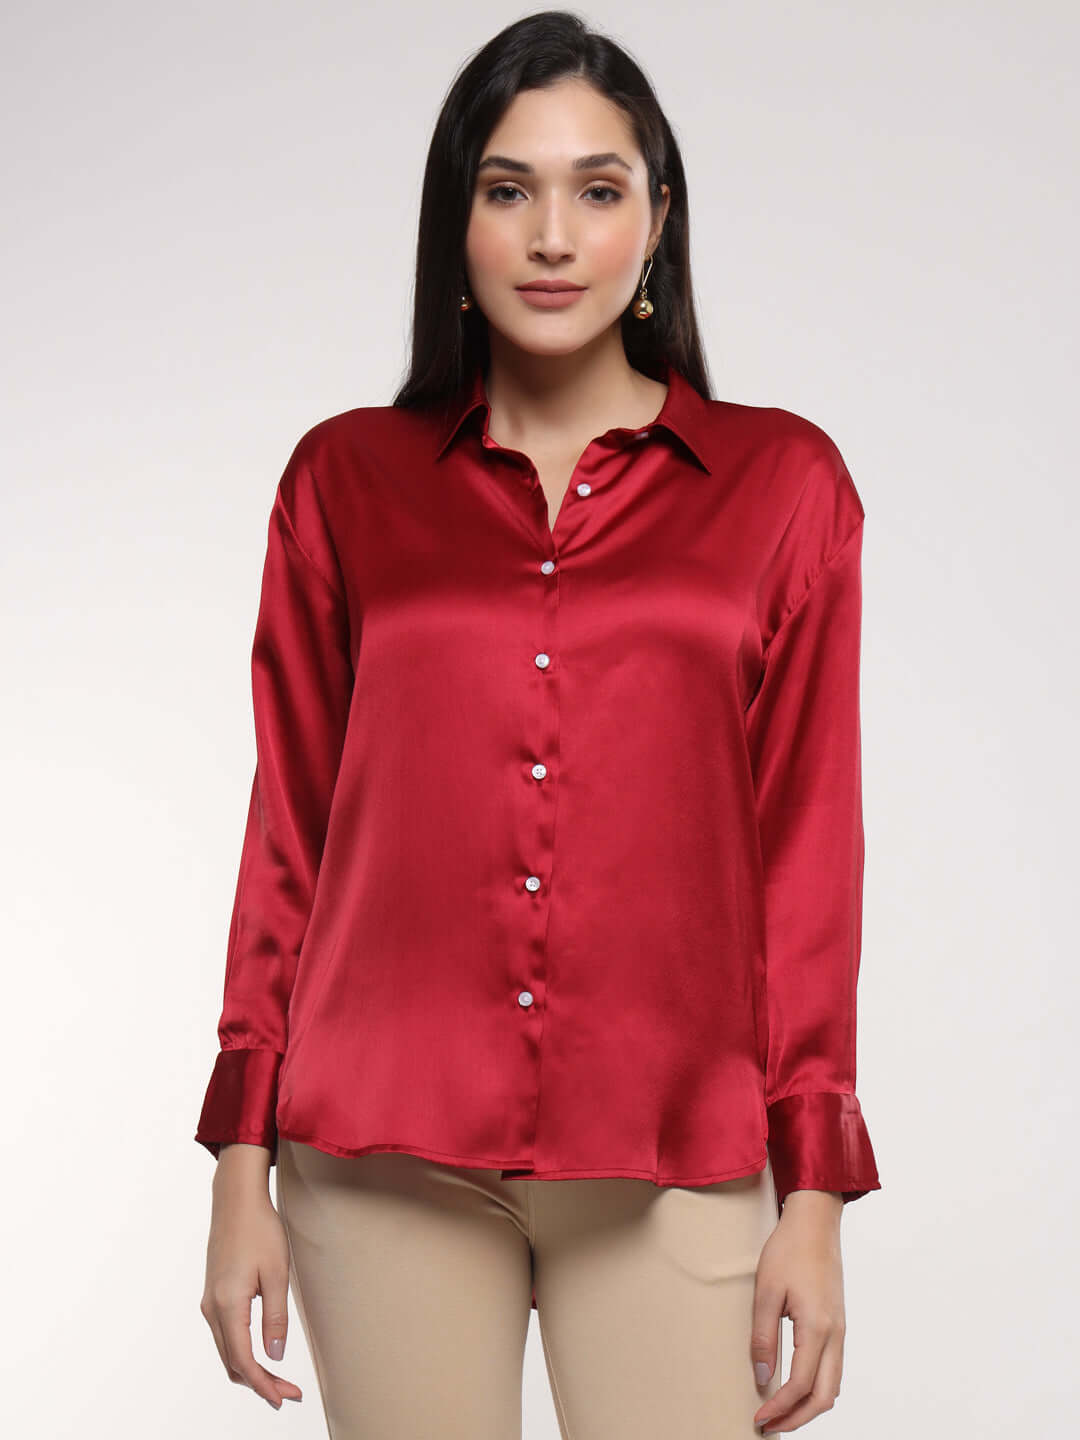 Women's Premium Maroon Satin Shirt